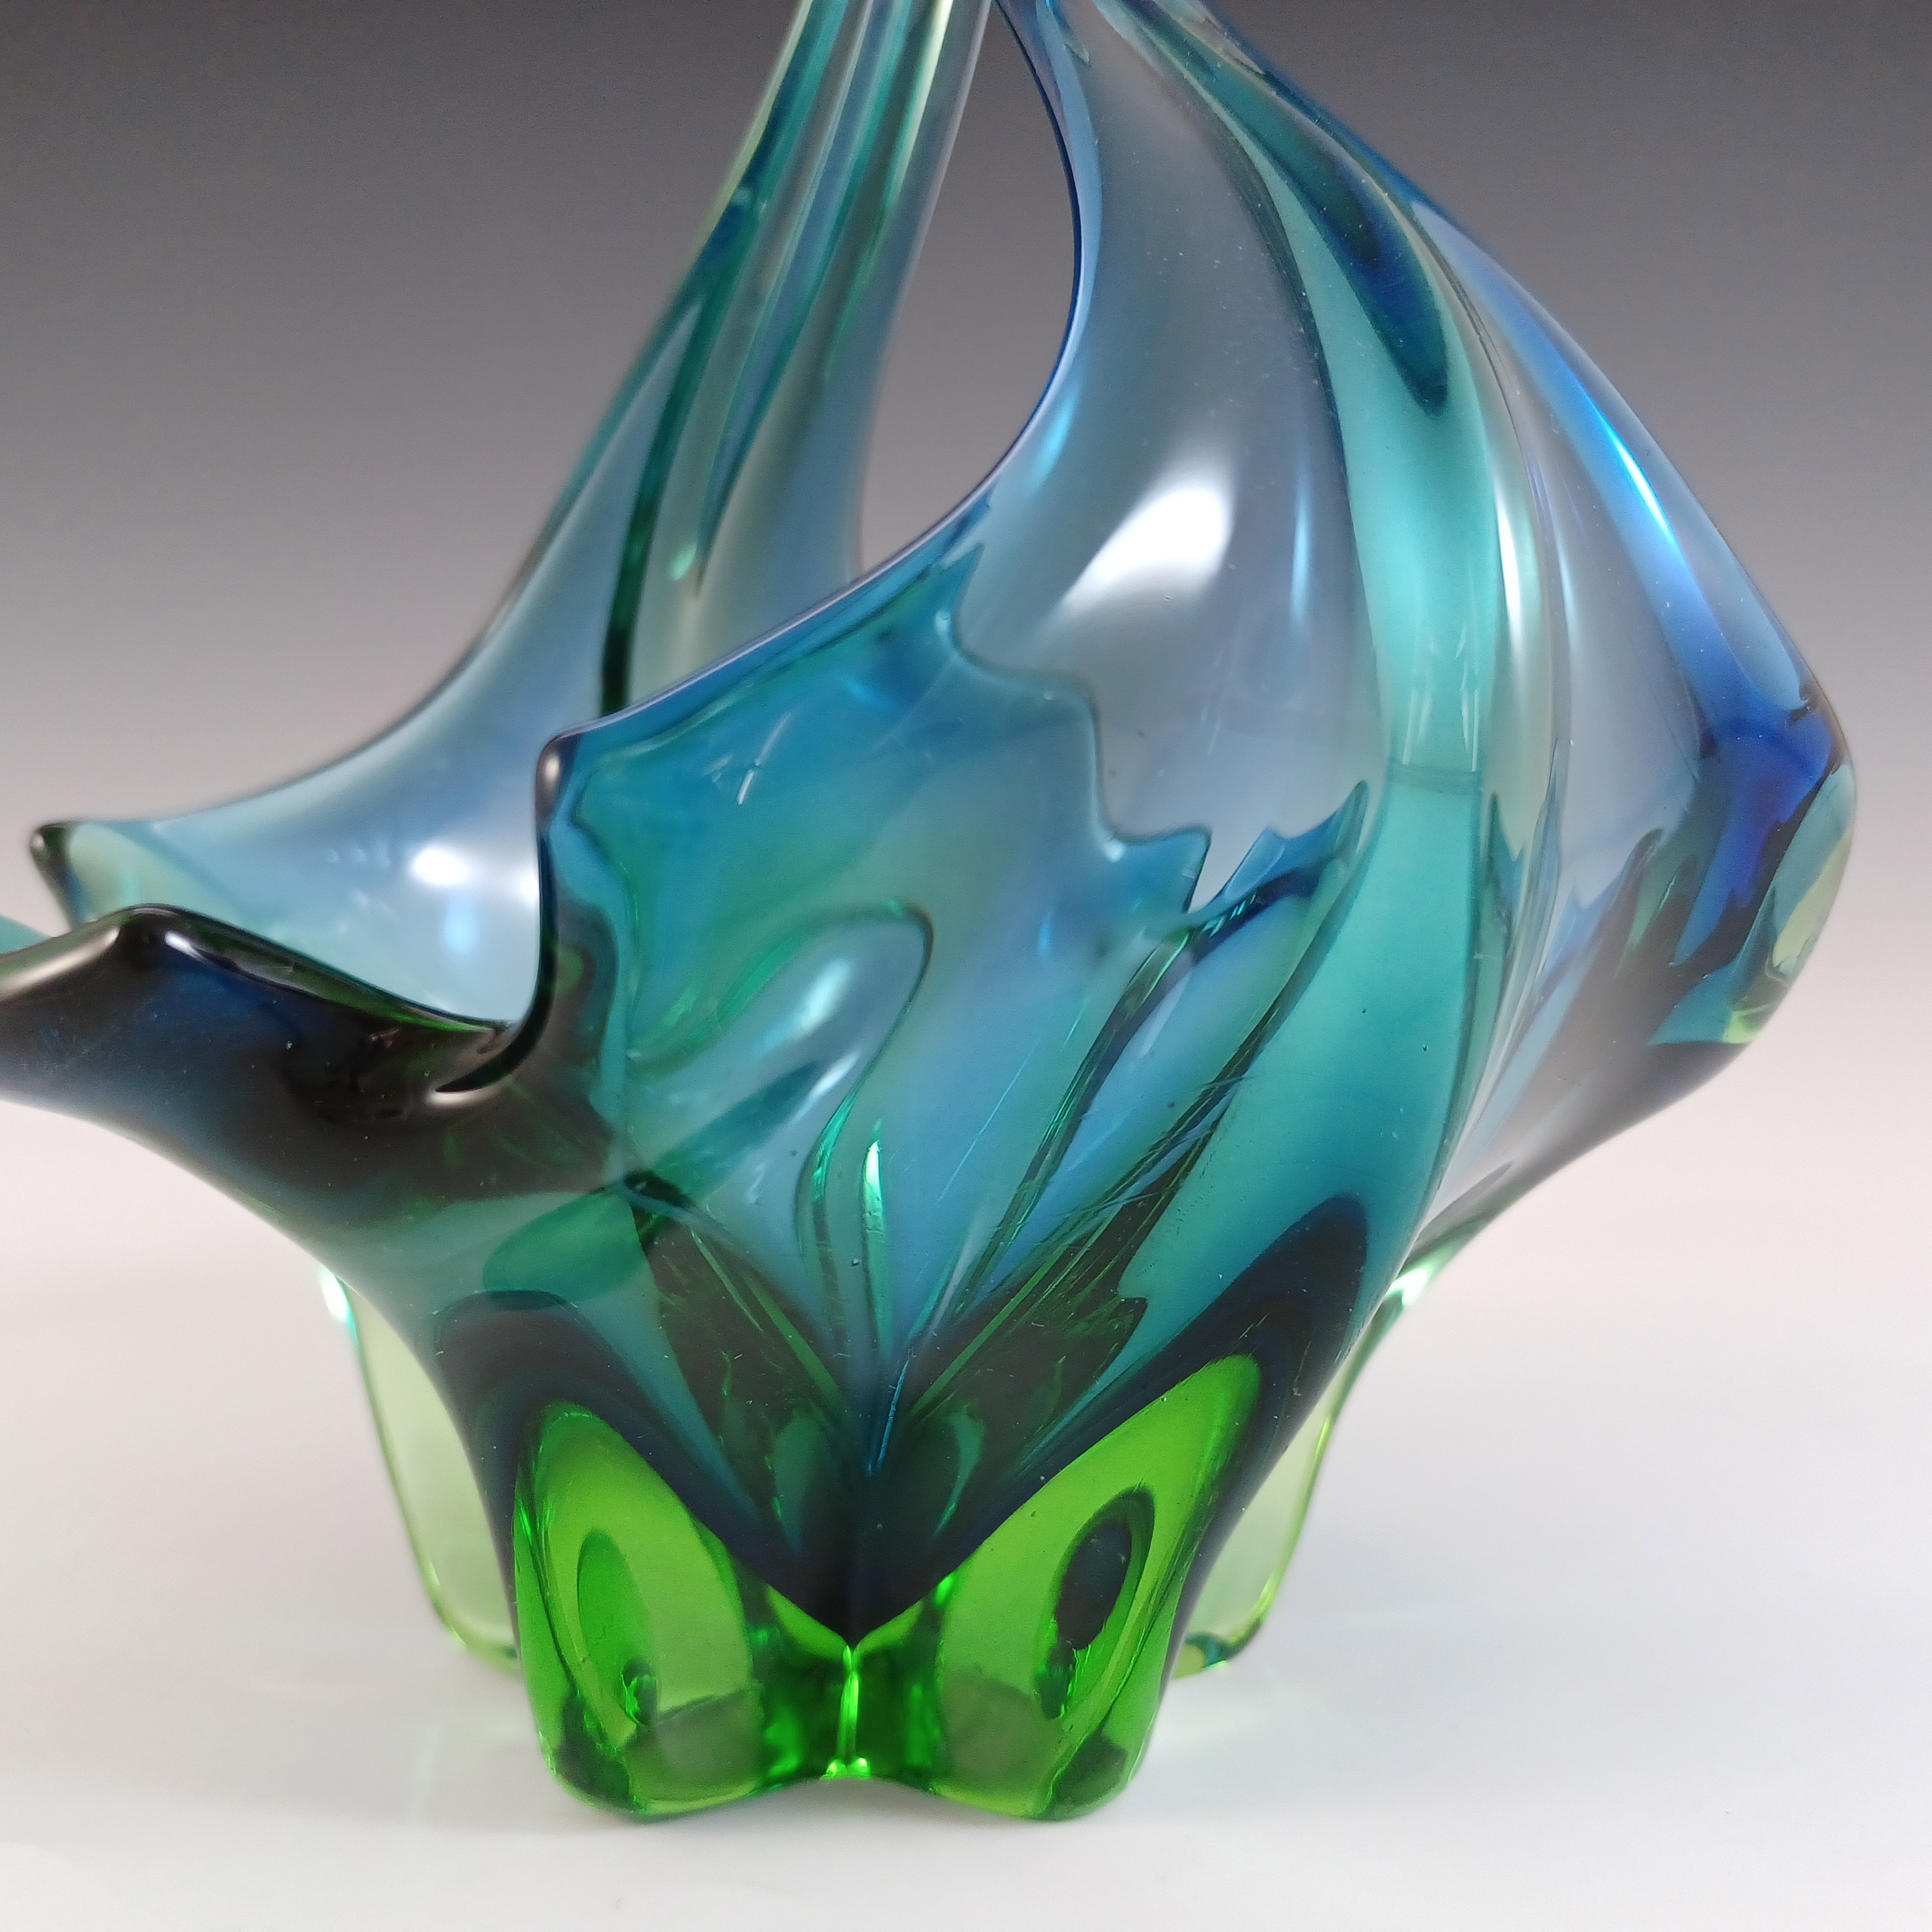 Cristallo Venezia Murano Blue & Green Sommerso Glass Vase / Bowl - Click Image to Close